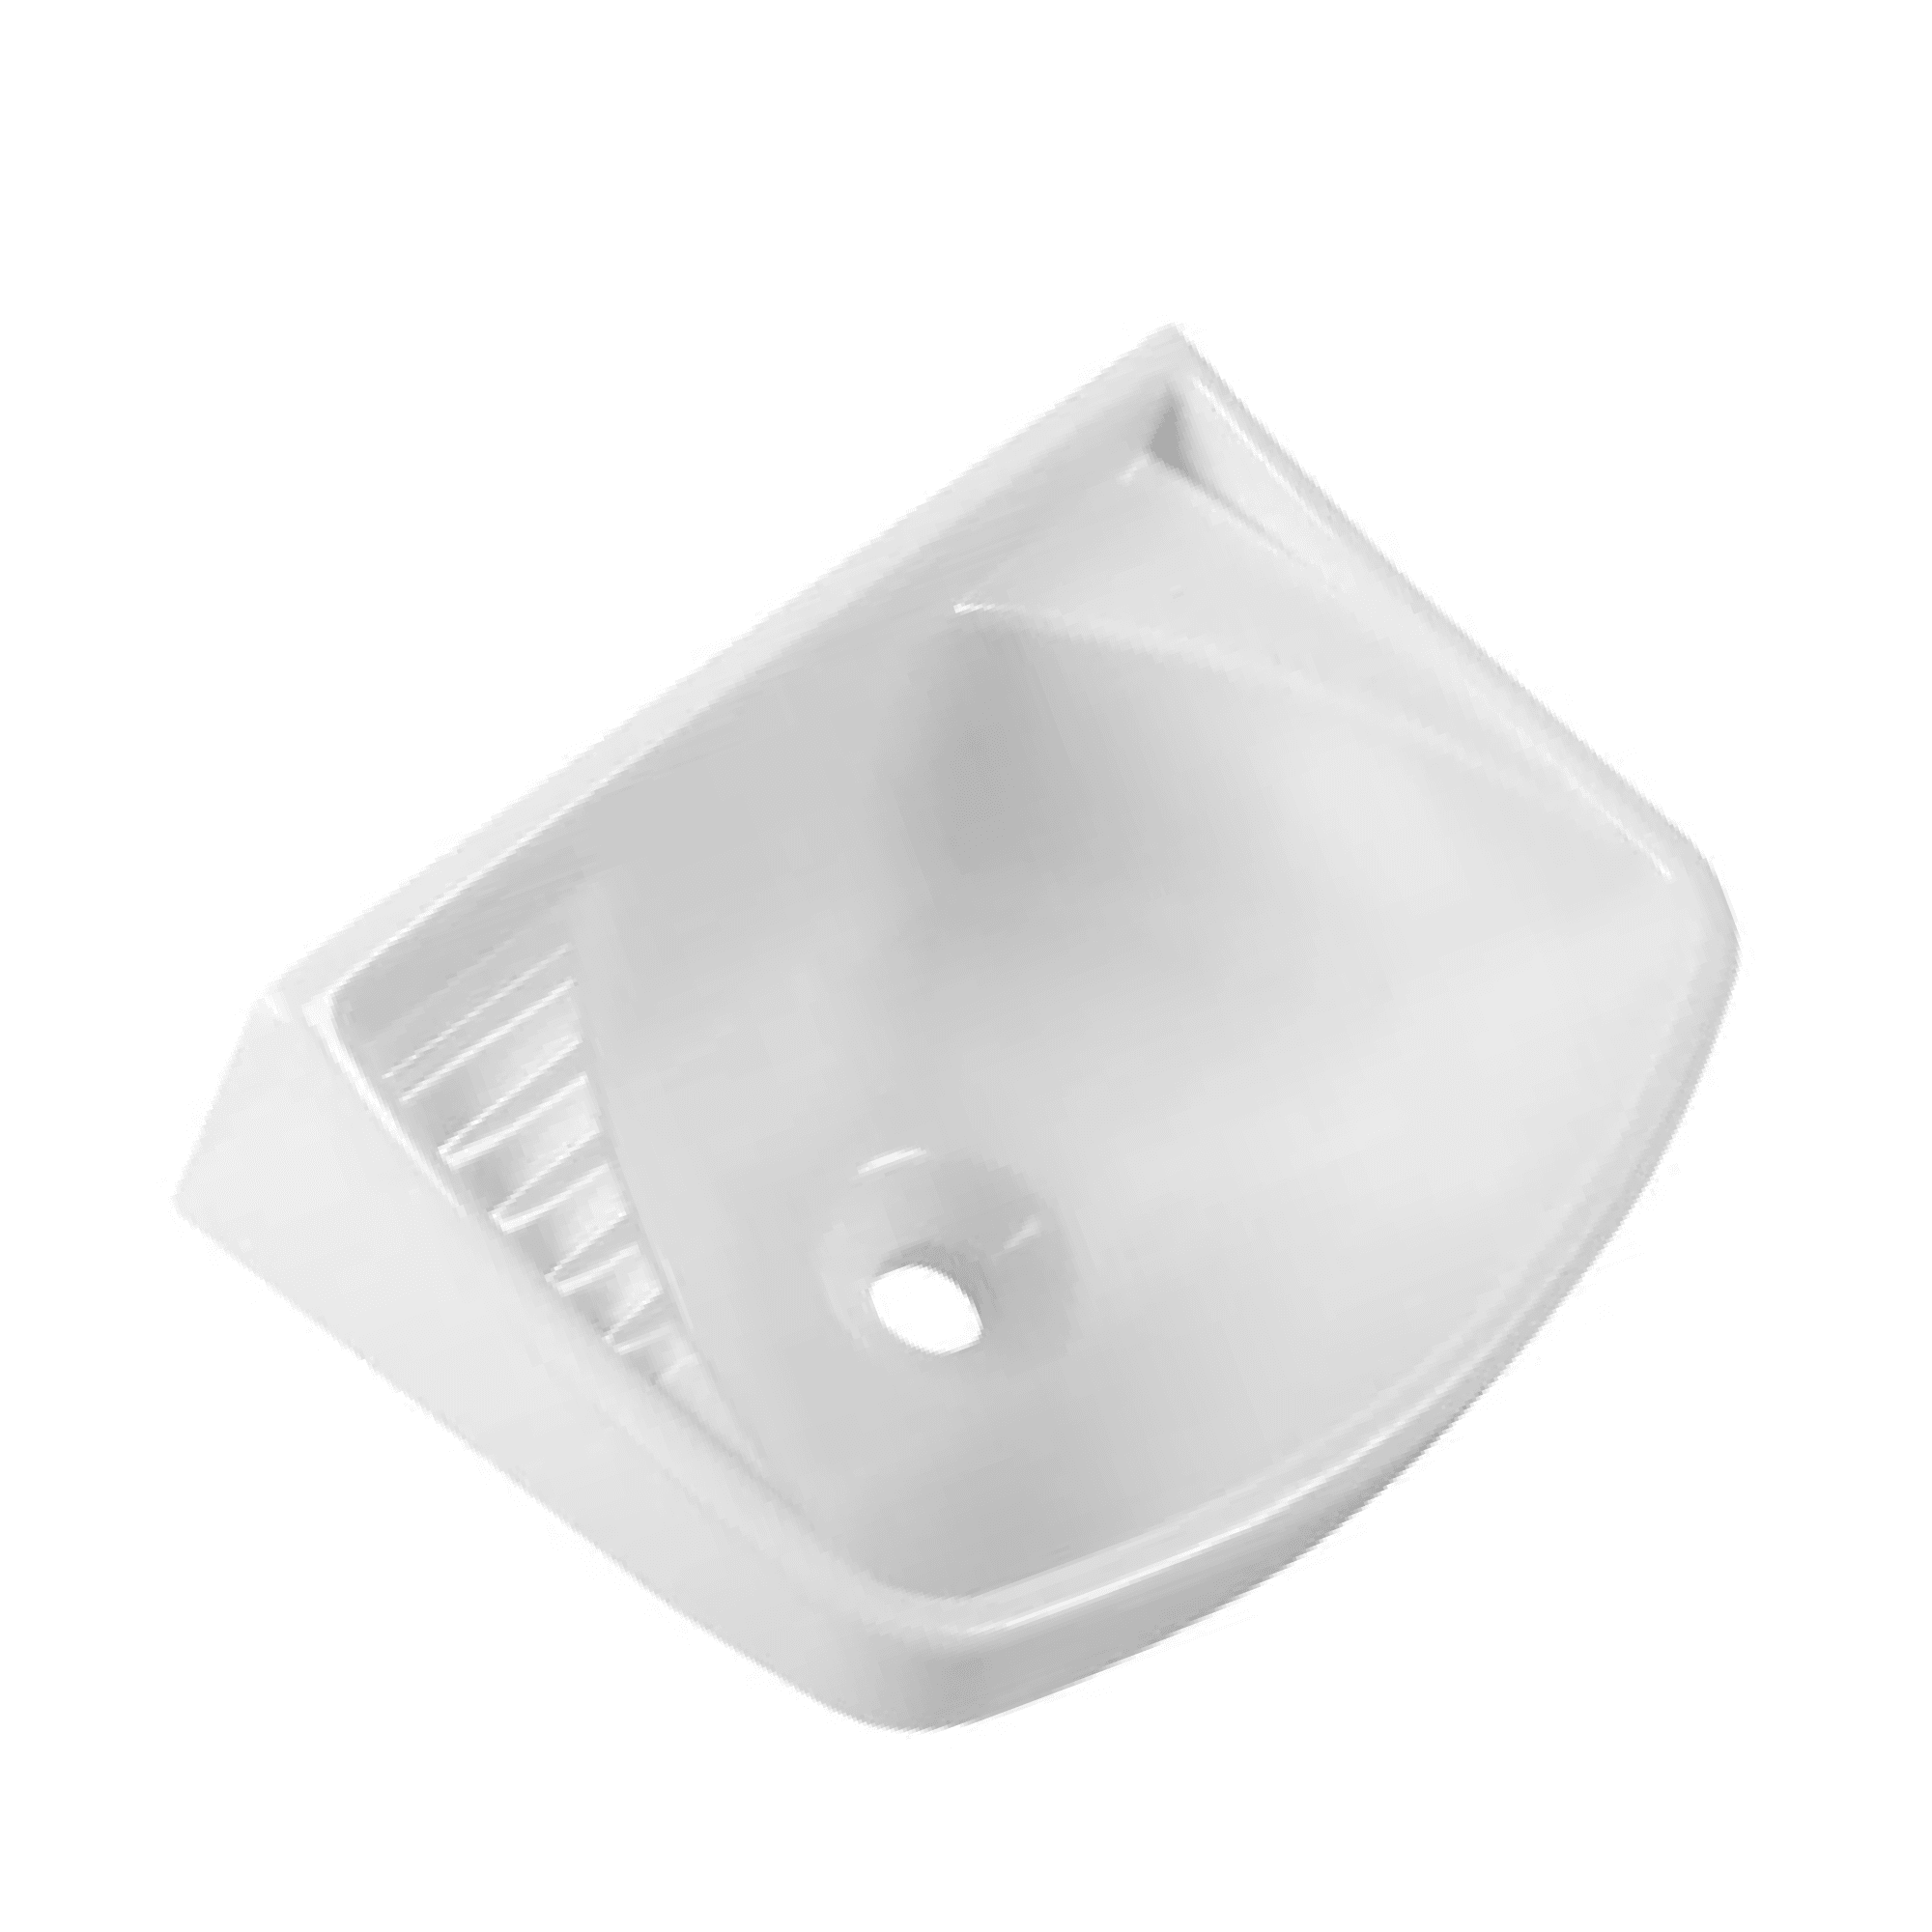 Pia Lavatório Banheiro Plástico 4,8l Branca | Astra - 4